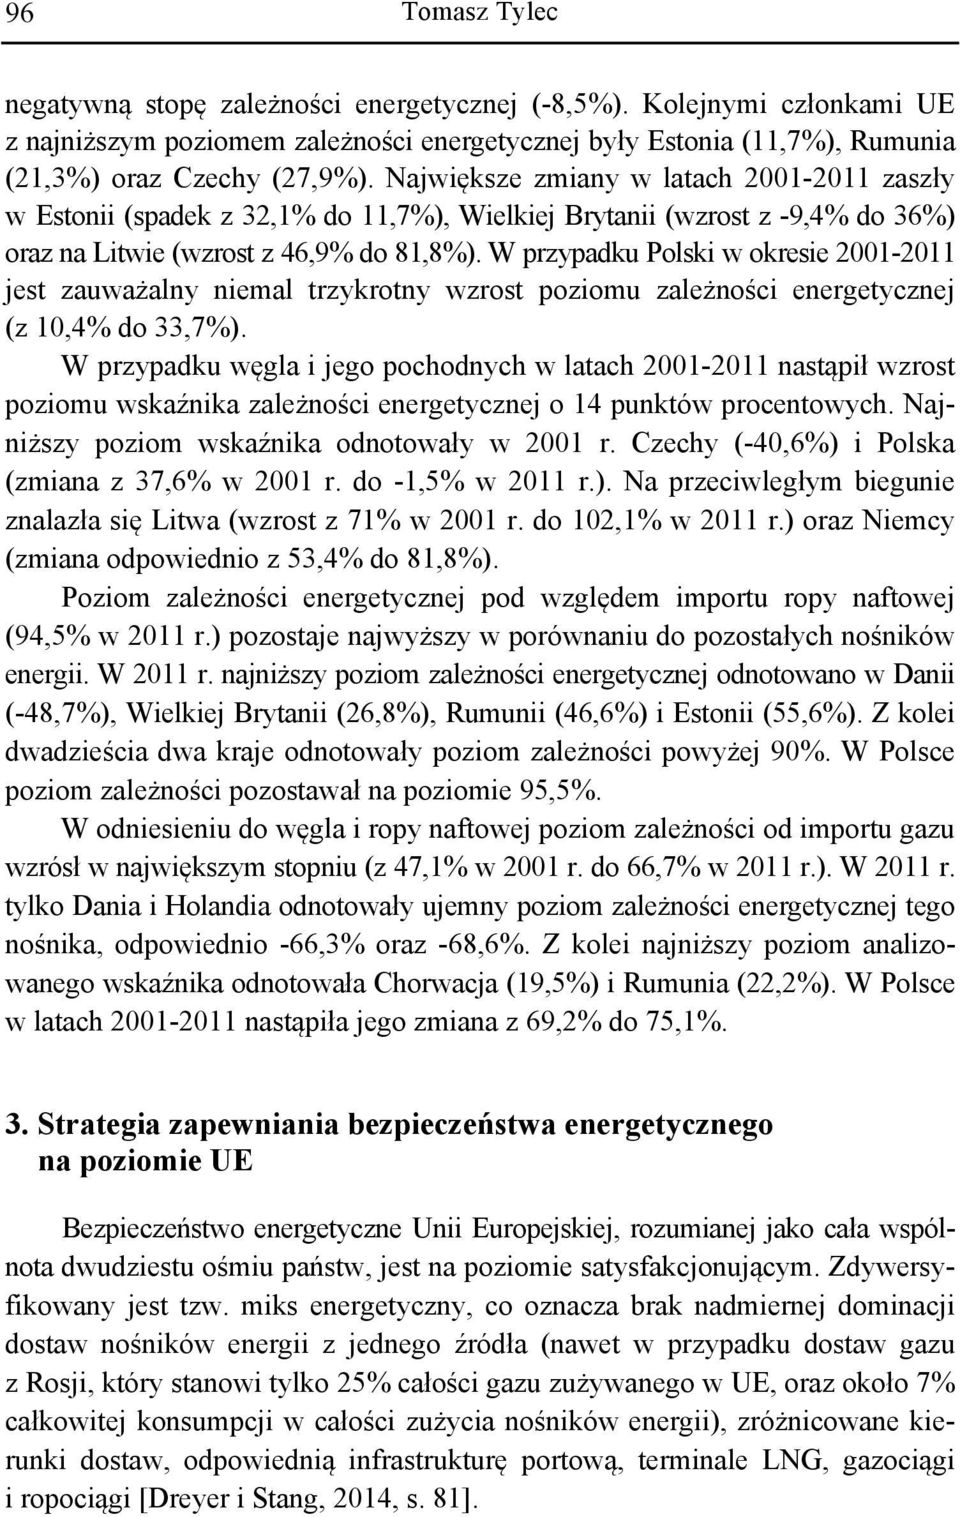 W przypadku Polski w okresie 2001-2011 jest zauważalny niemal trzykrotny wzrost poziomu zależności energetycznej (z 10,4% do 33,7%).